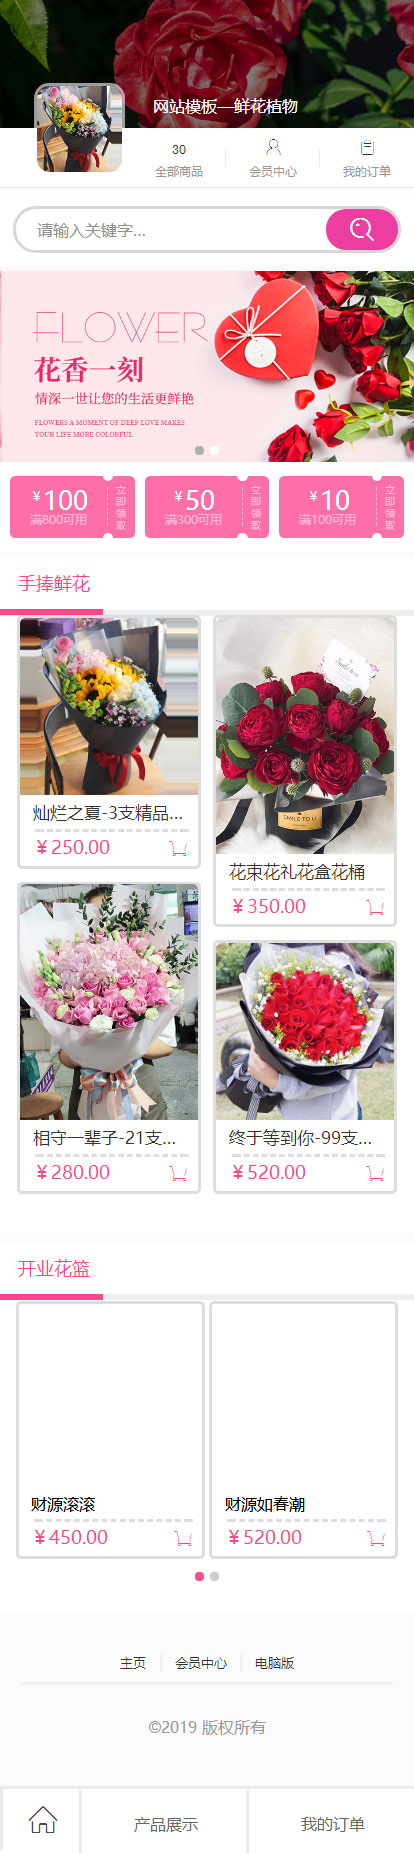 鲜花店在线商城销售精美模板